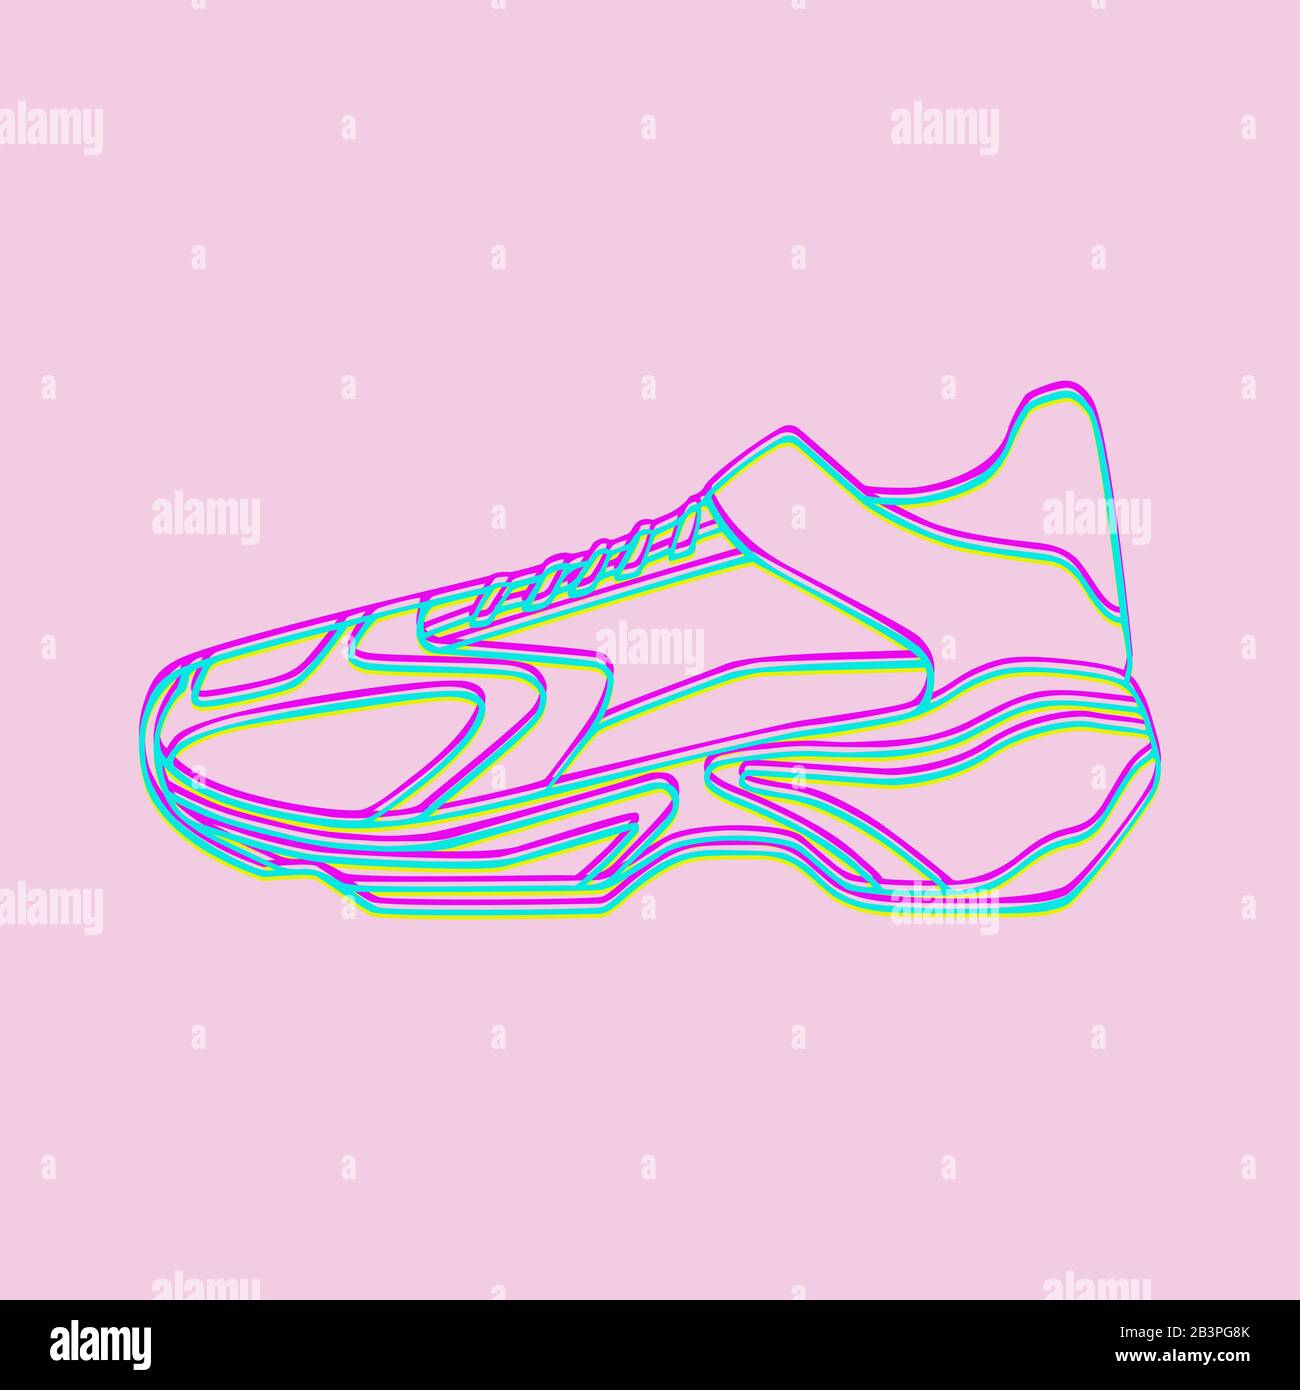 Vektorsymbol für Sneakers. Helle Neon Linearschuhe auf pinkfarbenem Hintergrund.Einfache Abbildung von Fitness und Sport, Sportschuh. Signieren Sie die Grafiken im Shop Stock Vektor